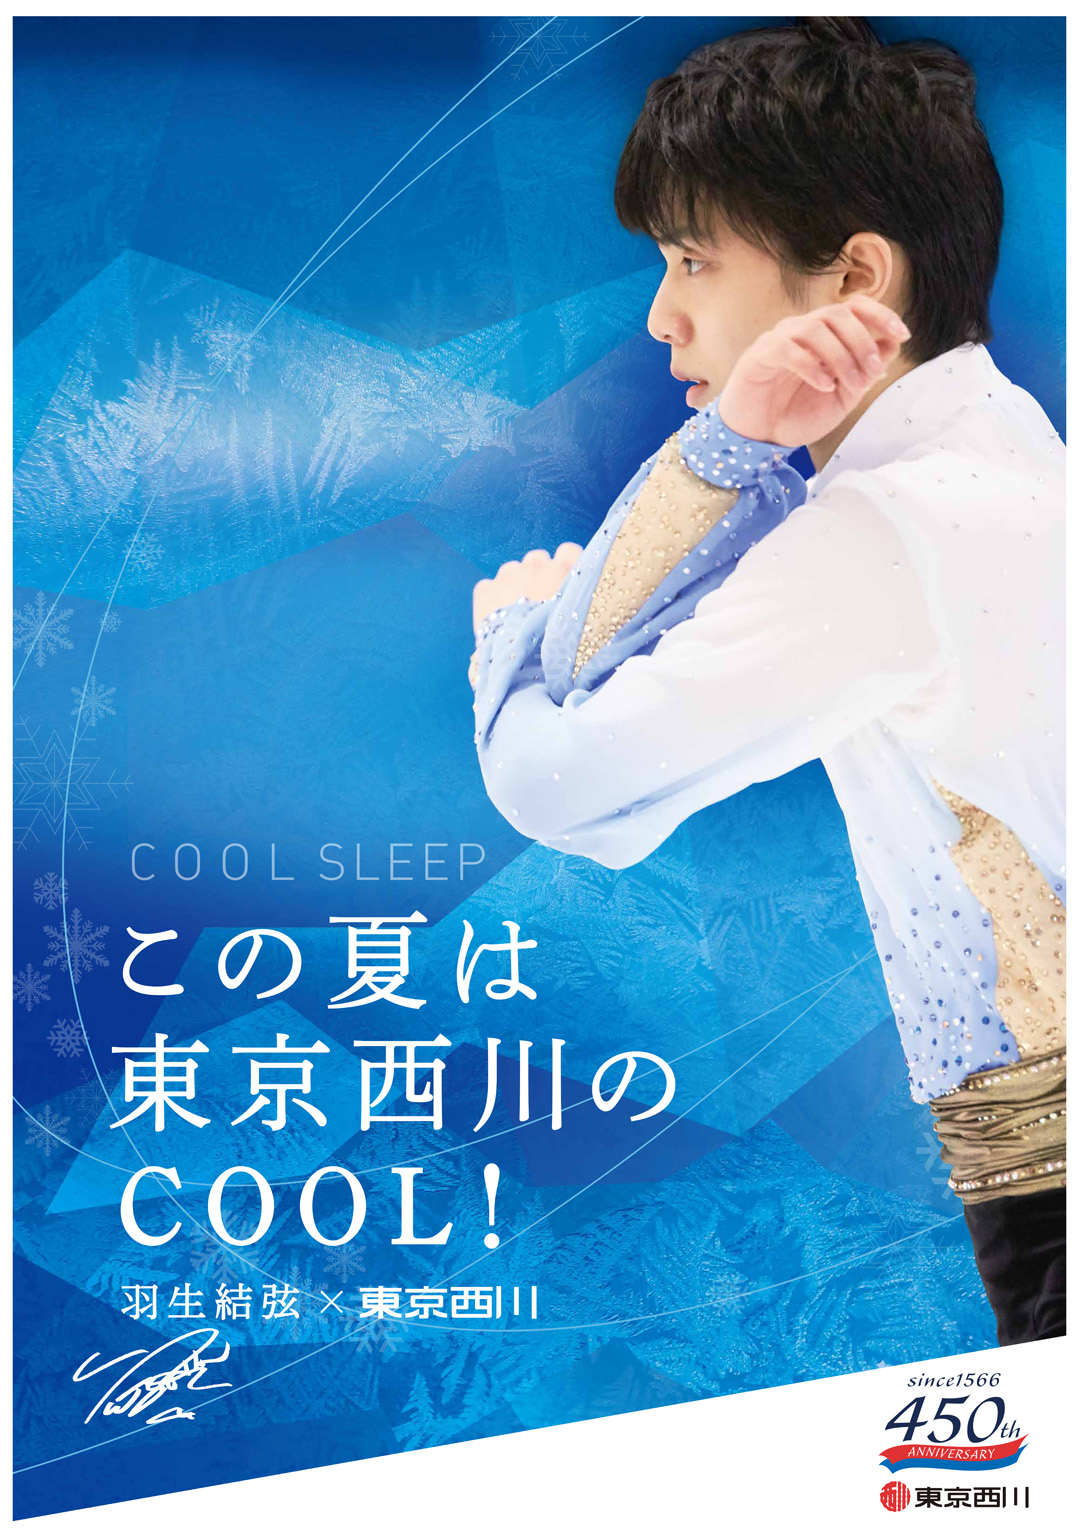 羽生結弦選手を起用した 東京西川 Cool Sleep キャンペーン を6月1日 水 7月31日 日 の期間で開催 西川株式会社のプレスリリース